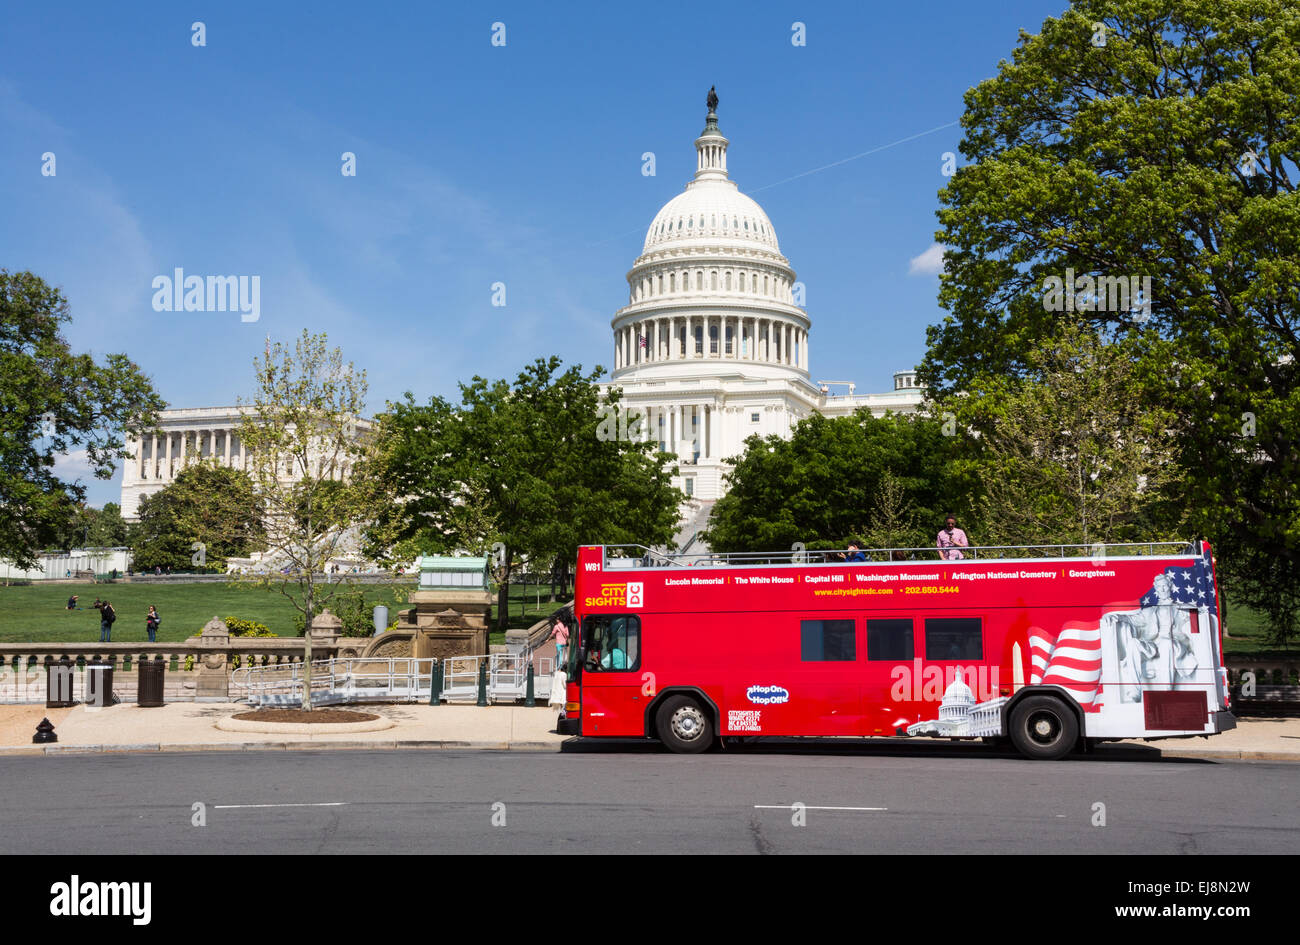 Lugares de interés de la Ciudad Roja tour bus en Washington D.C. Foto de stock